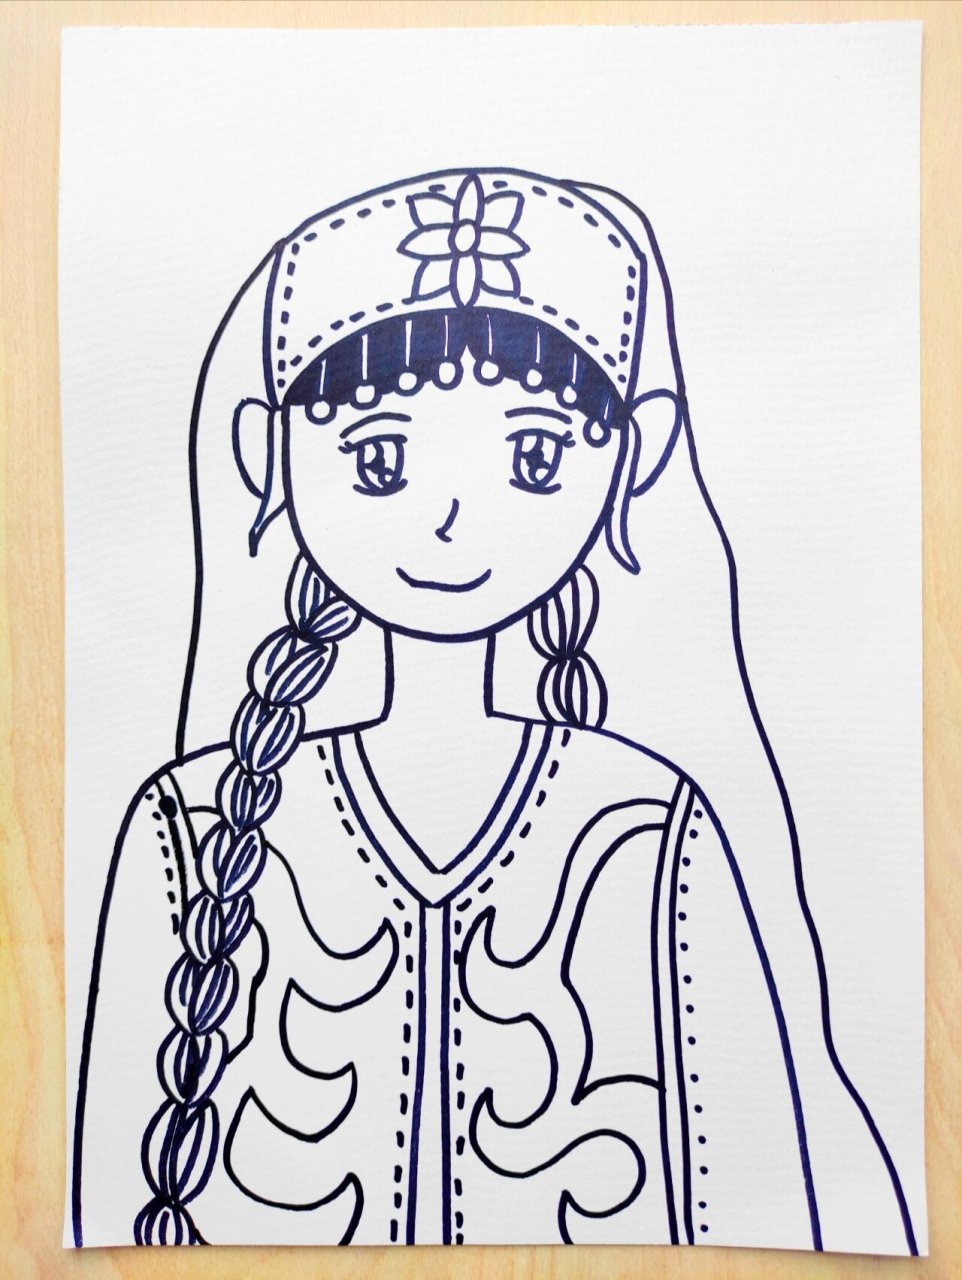 新疆女孩简笔画人物图片